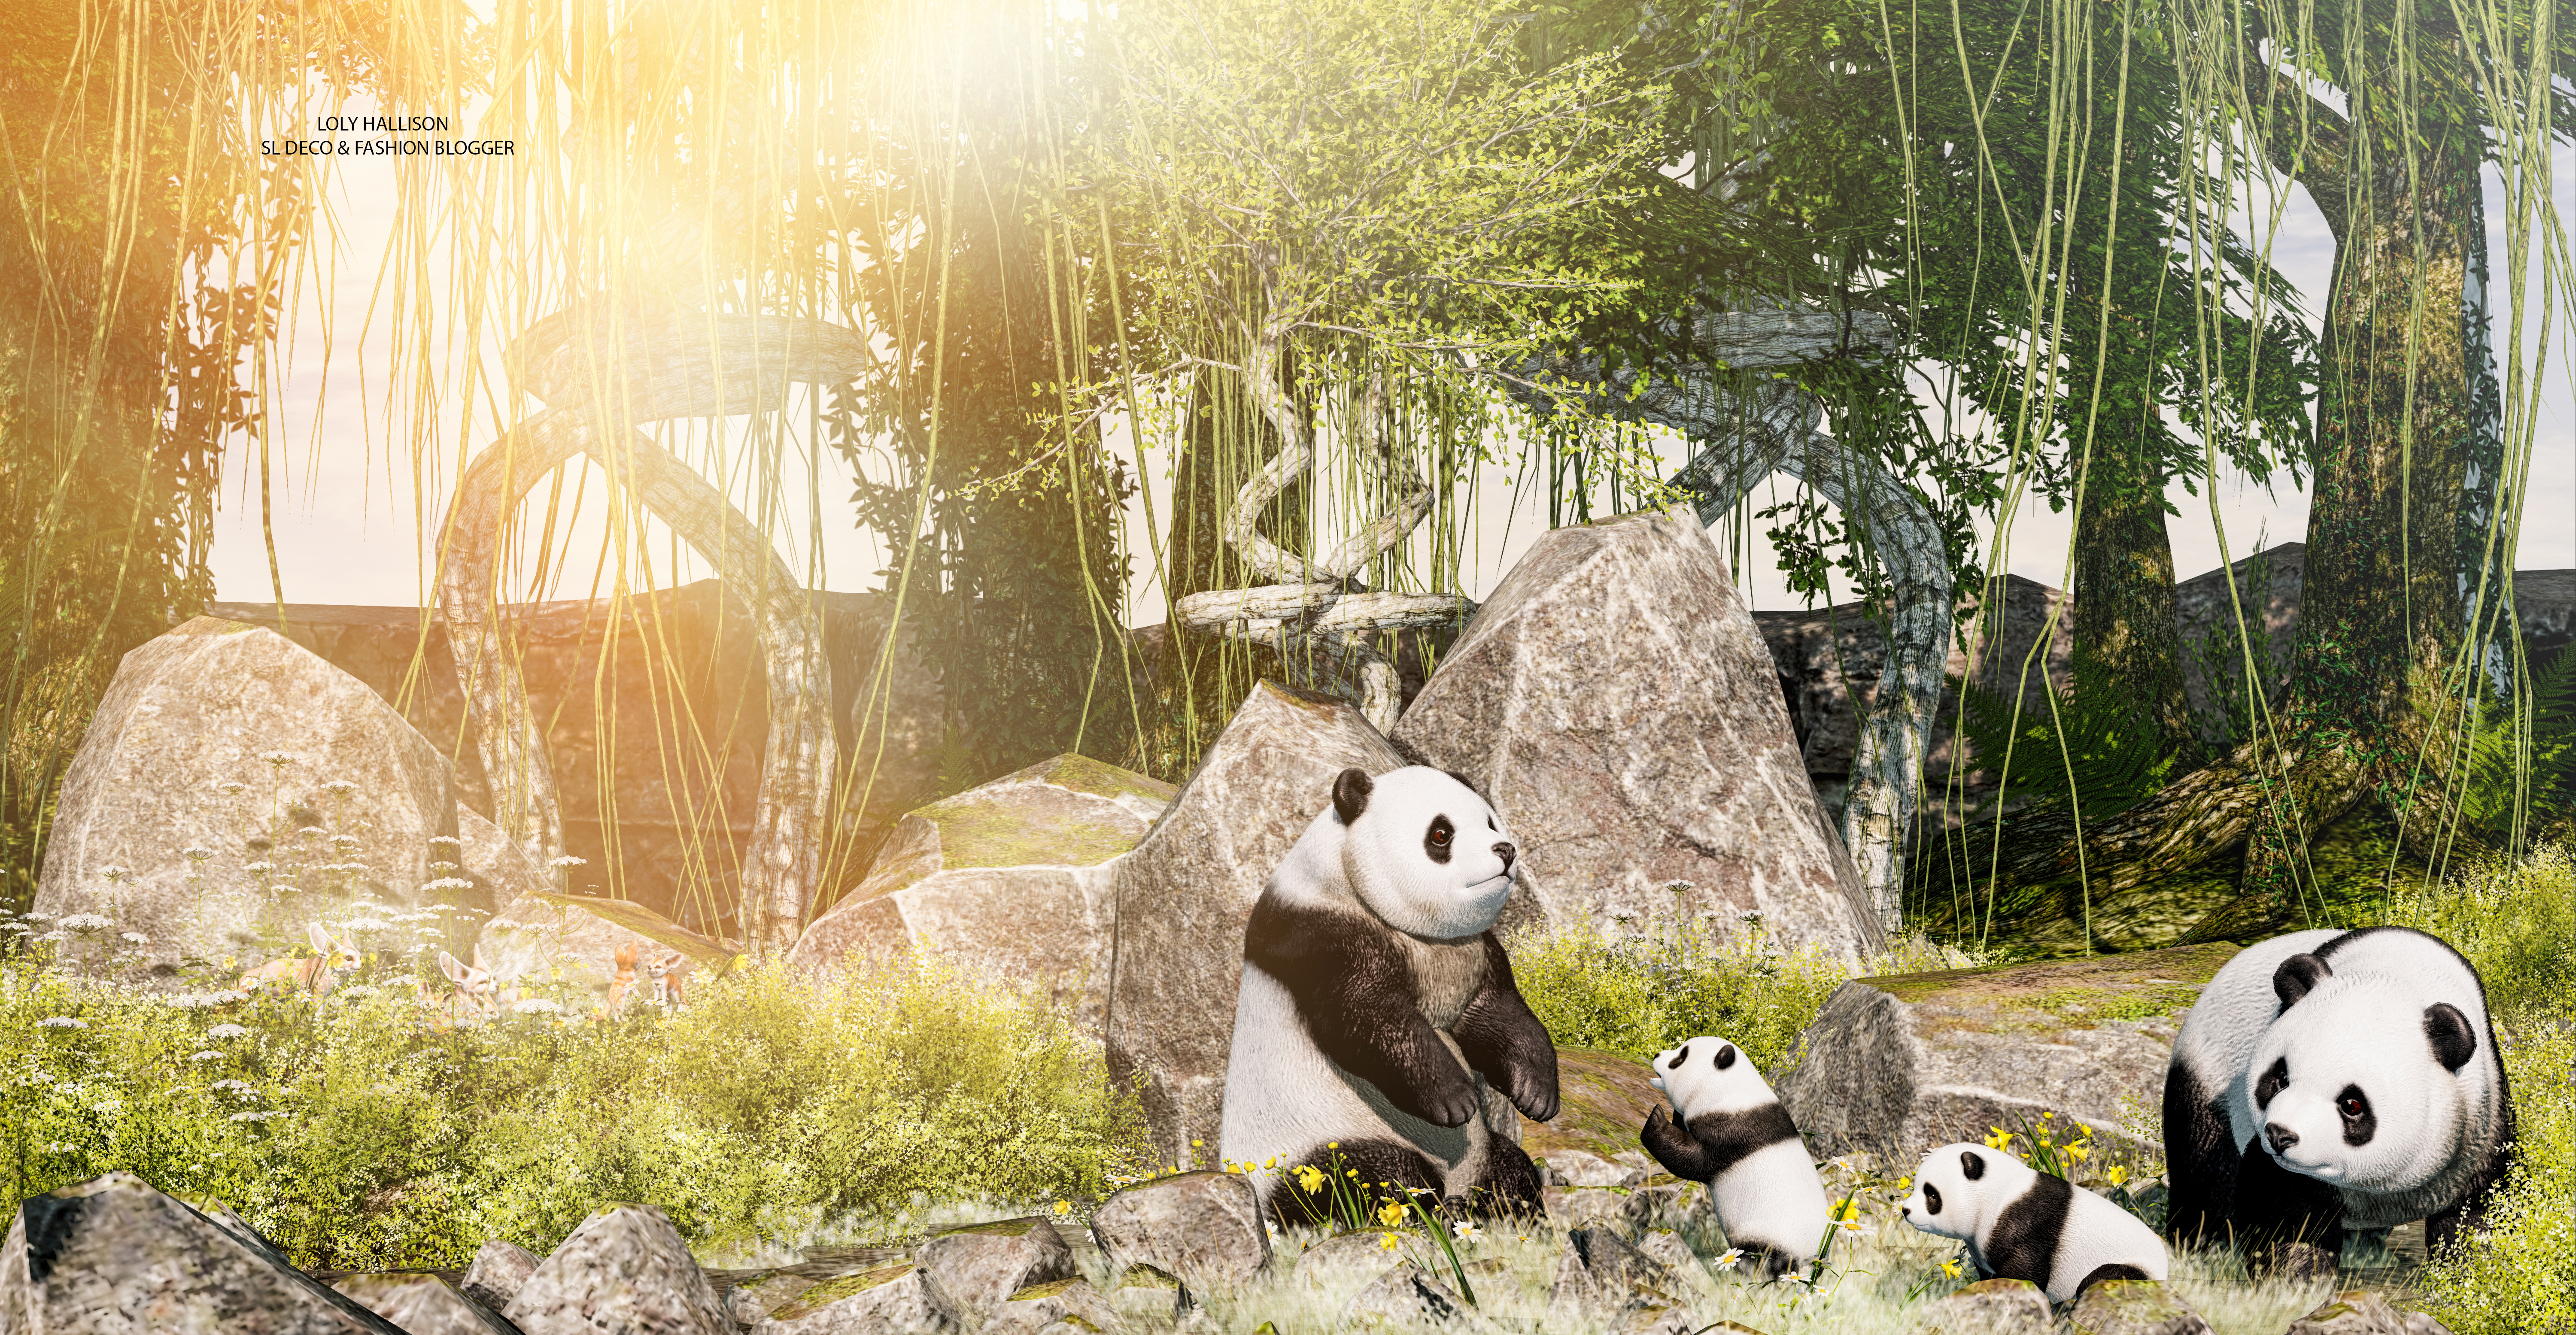 A cute Panda family